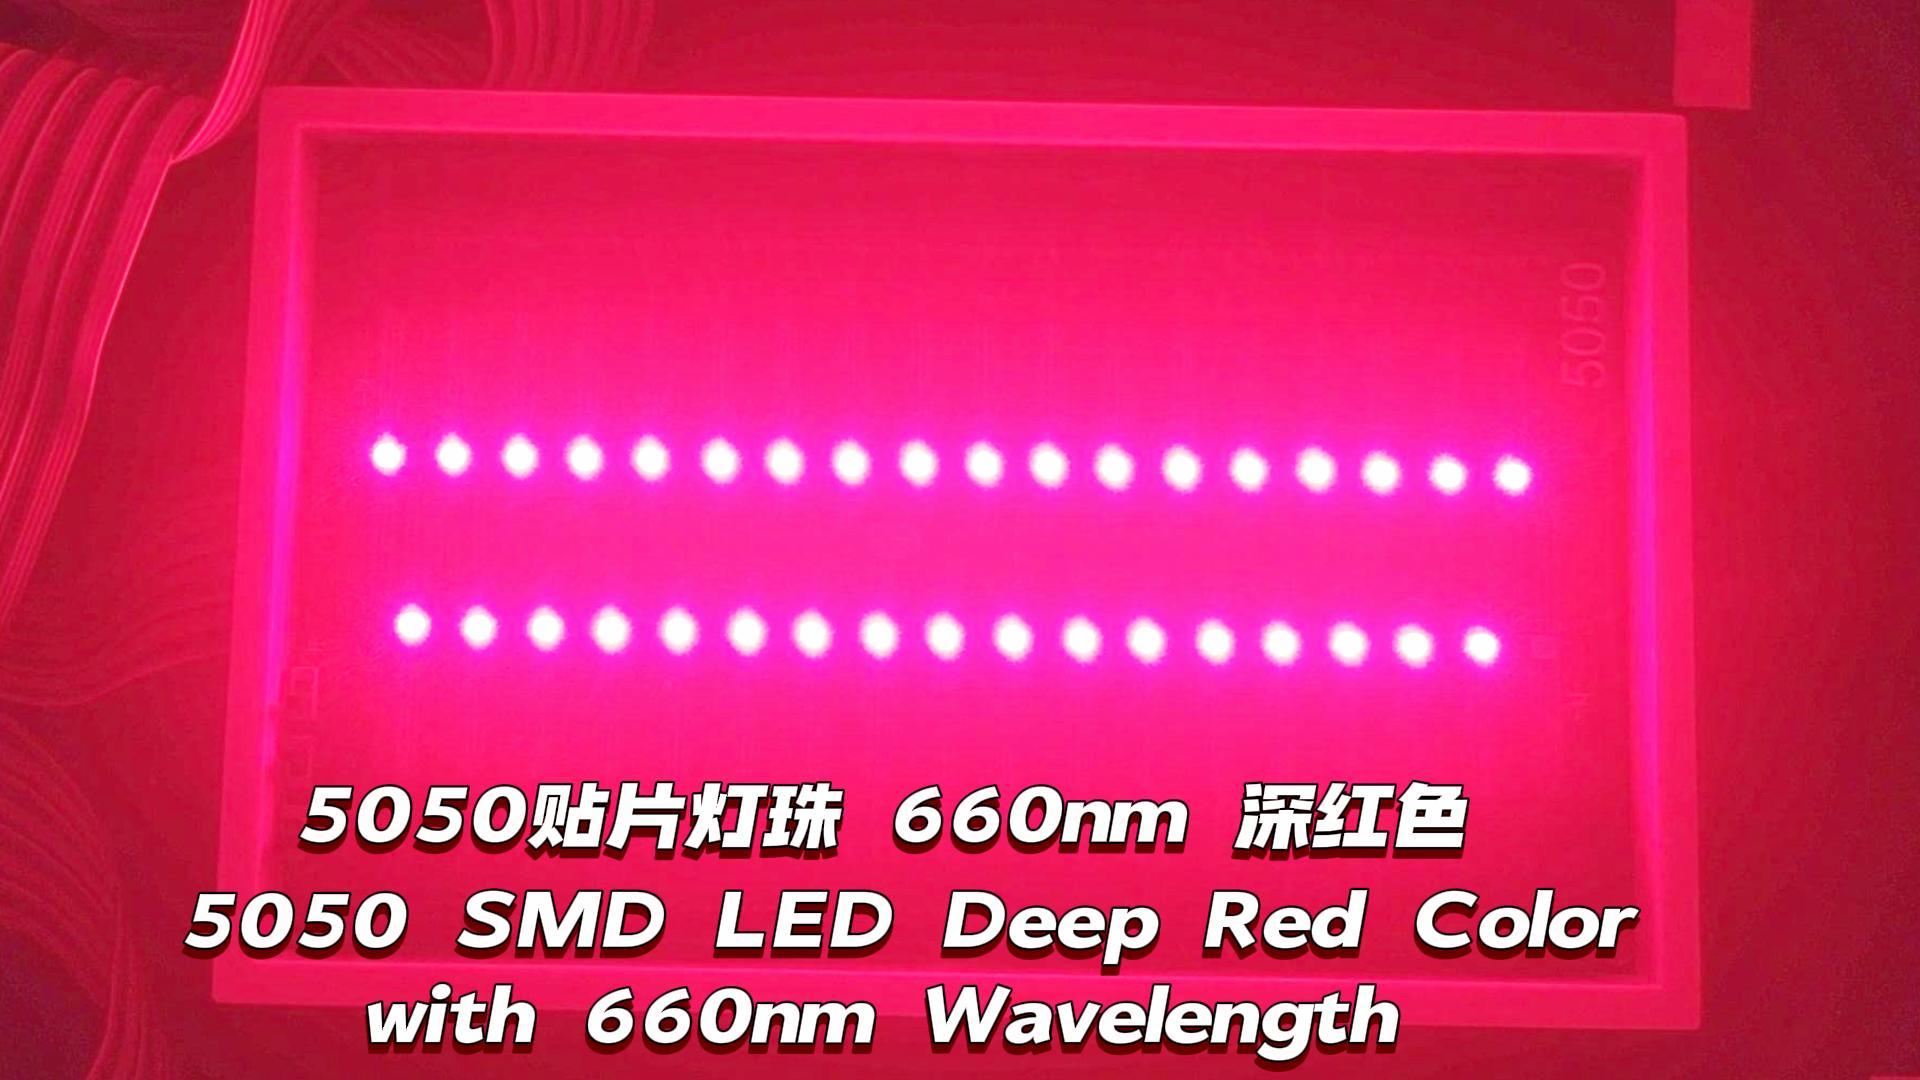 5050 SMD LED Red Color profunda com comprimento de onda de 660 nm